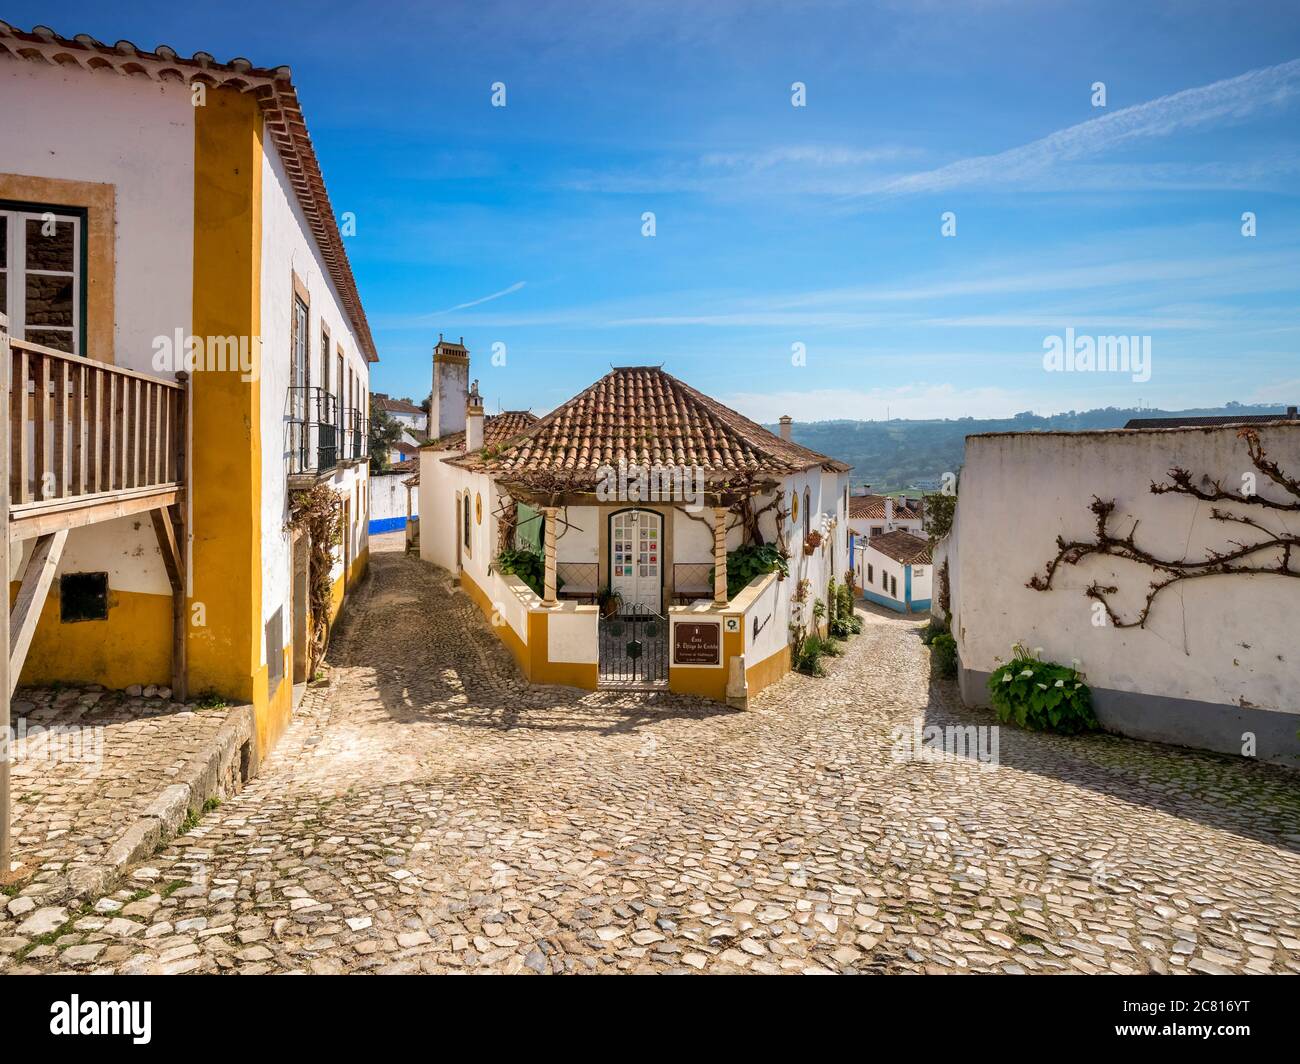 11 marzo 2020: Obidos, Portogallo - strade e case nella città murata di Obidos. Foto Stock